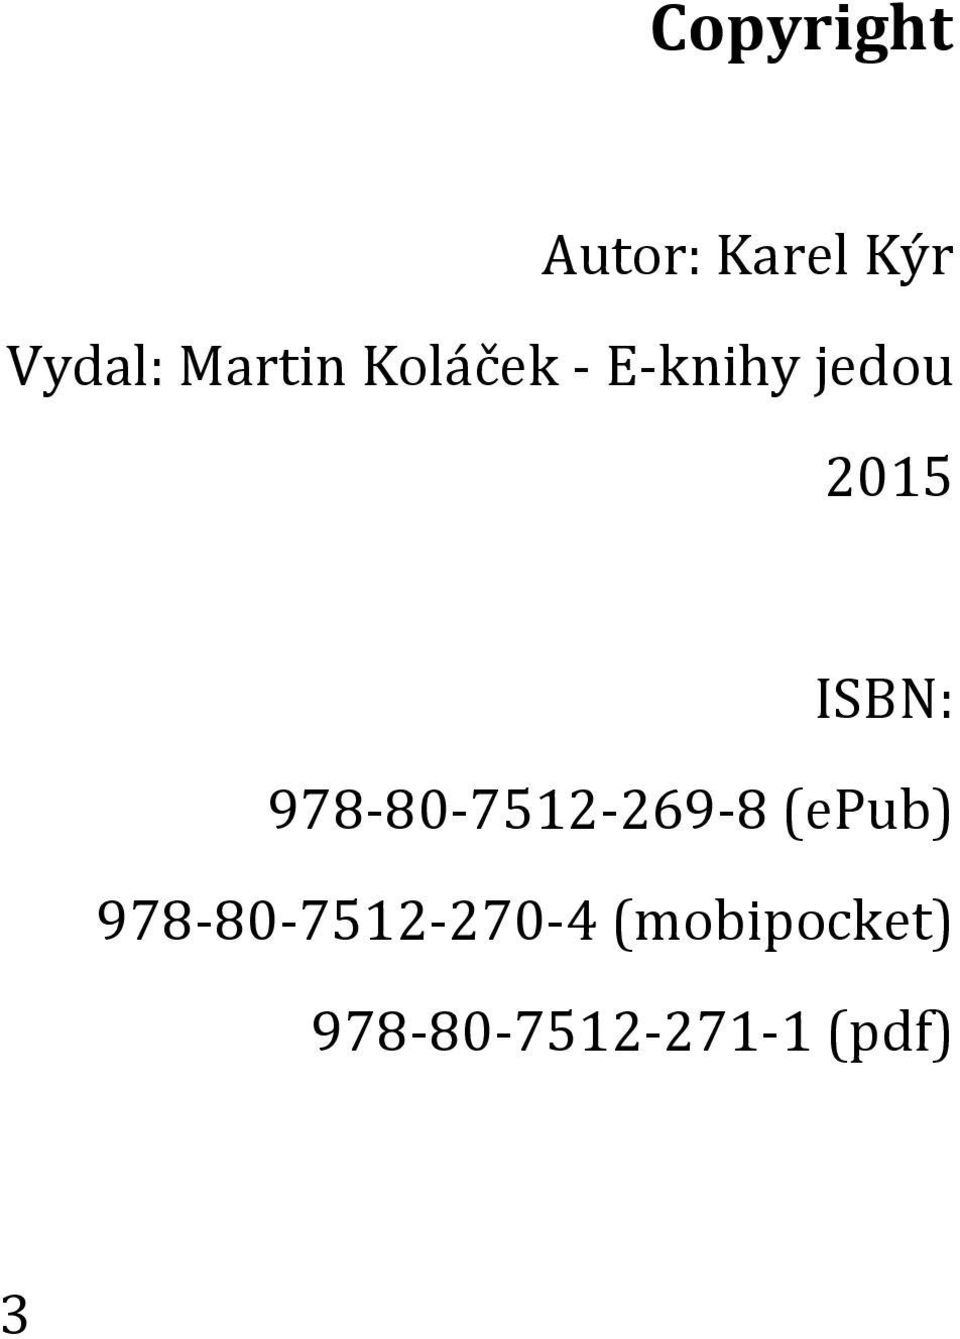 ISBN: 978-80-7512-269-8 (epub)